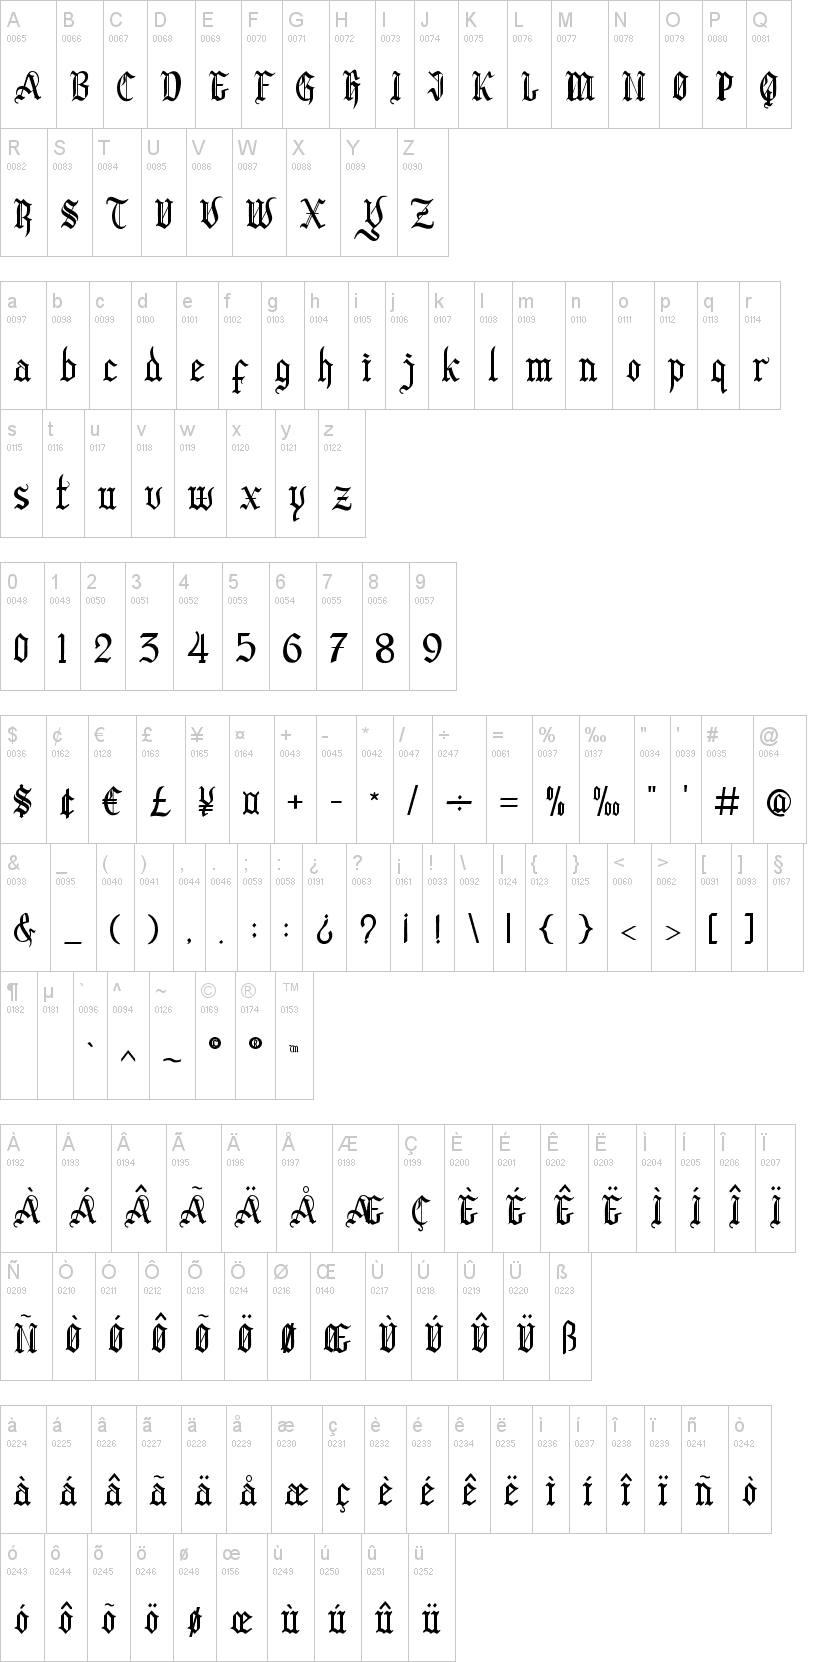 Download Free Black Clover Font Dafont Com Fonts Typography